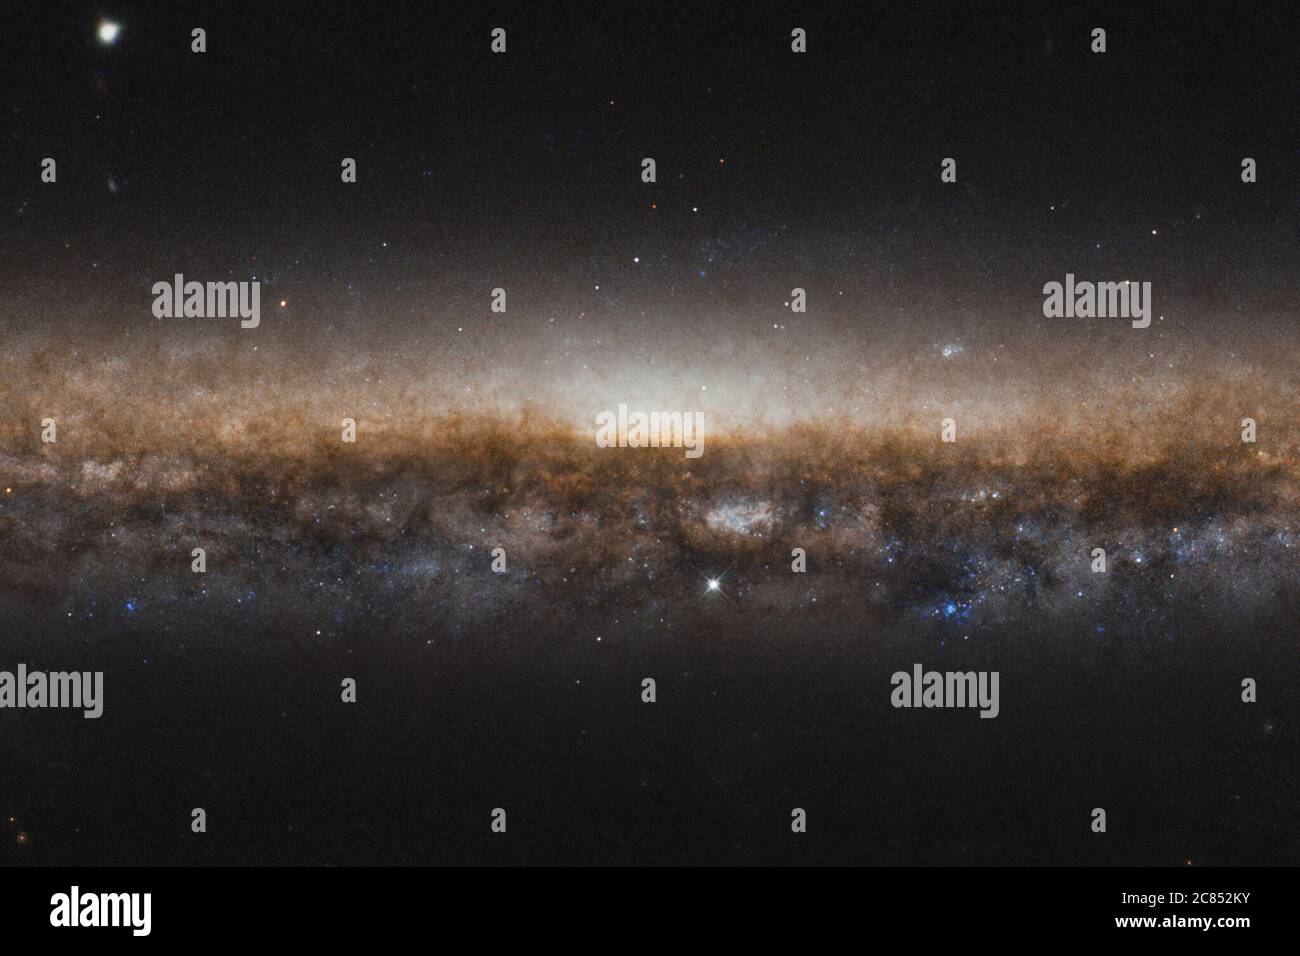 Washington, Usa. Juli 2020. Die Galaxie NGC 5907 erstreckt sich weit über dieses Bild. Sie erscheint als eine längliche Linie von Sternen und dunklem Staub und wird als Spiralgalaxie eingestuft, genau wie unsere eigene Milchstraße. In diesem neuen Bild vom NASA/ESA Hubble Space Telescope sehen wir die schönen Spiralarme nicht, weil wir sie randlos betrachten, wie auf den Rand einer Platte zu schauen. Aus diesem Grund ist NGC 5907 auch als Knife Edge Galaxie bekannt. NASA/UPI Kredit: UPI/Alamy Live Nachrichten Stockfoto